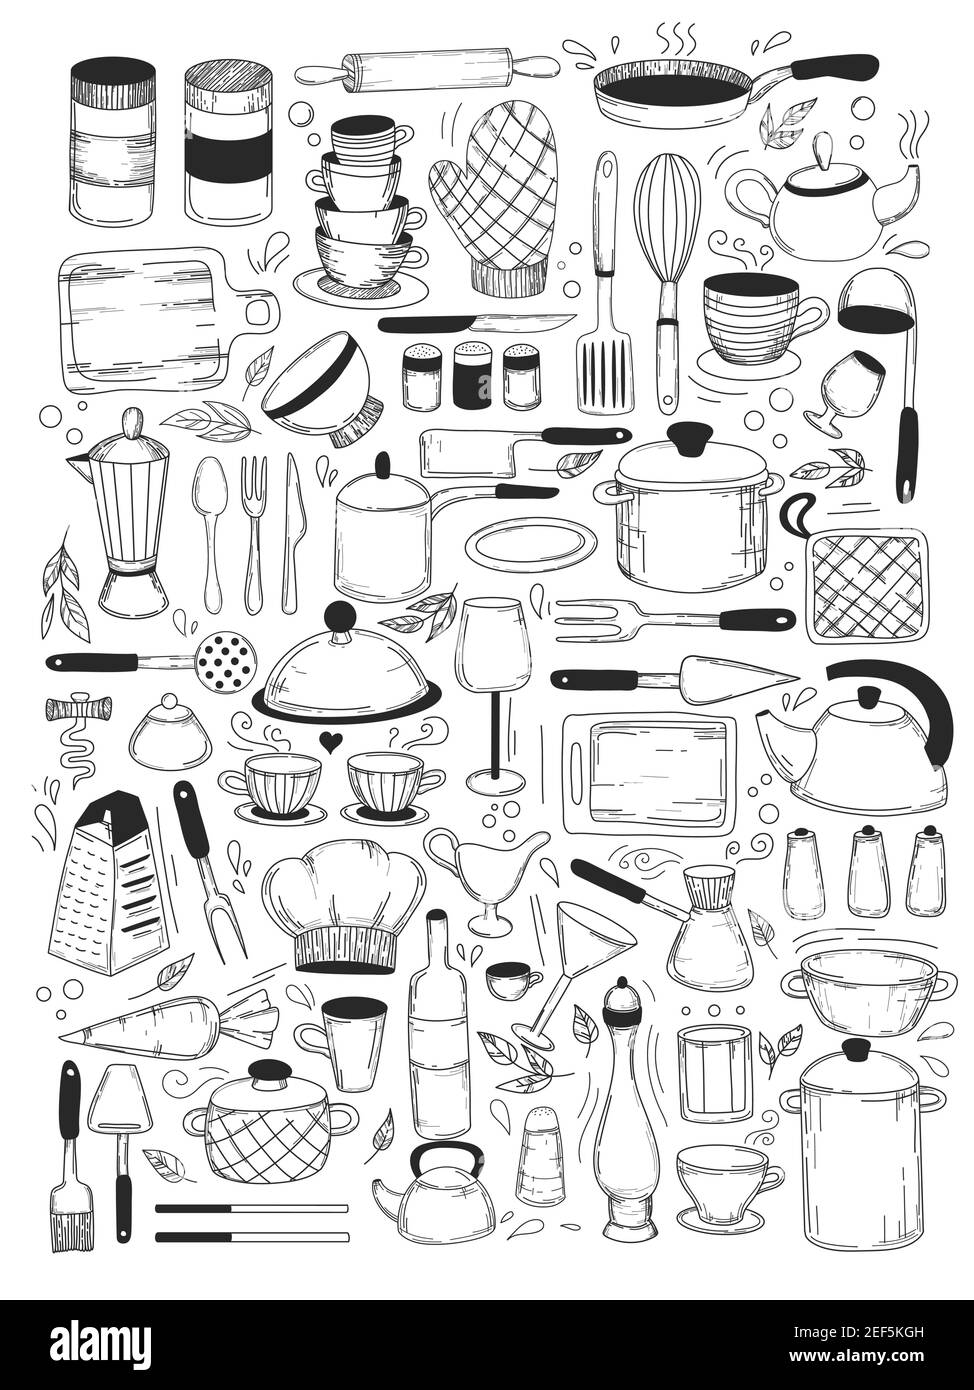 Kochkurse und Küchenausstattung Set, Kochsachen für Menüdekoration. Vektorsammlung isolierter Objekte. Symbole im Skizzenstil Stock Vektor